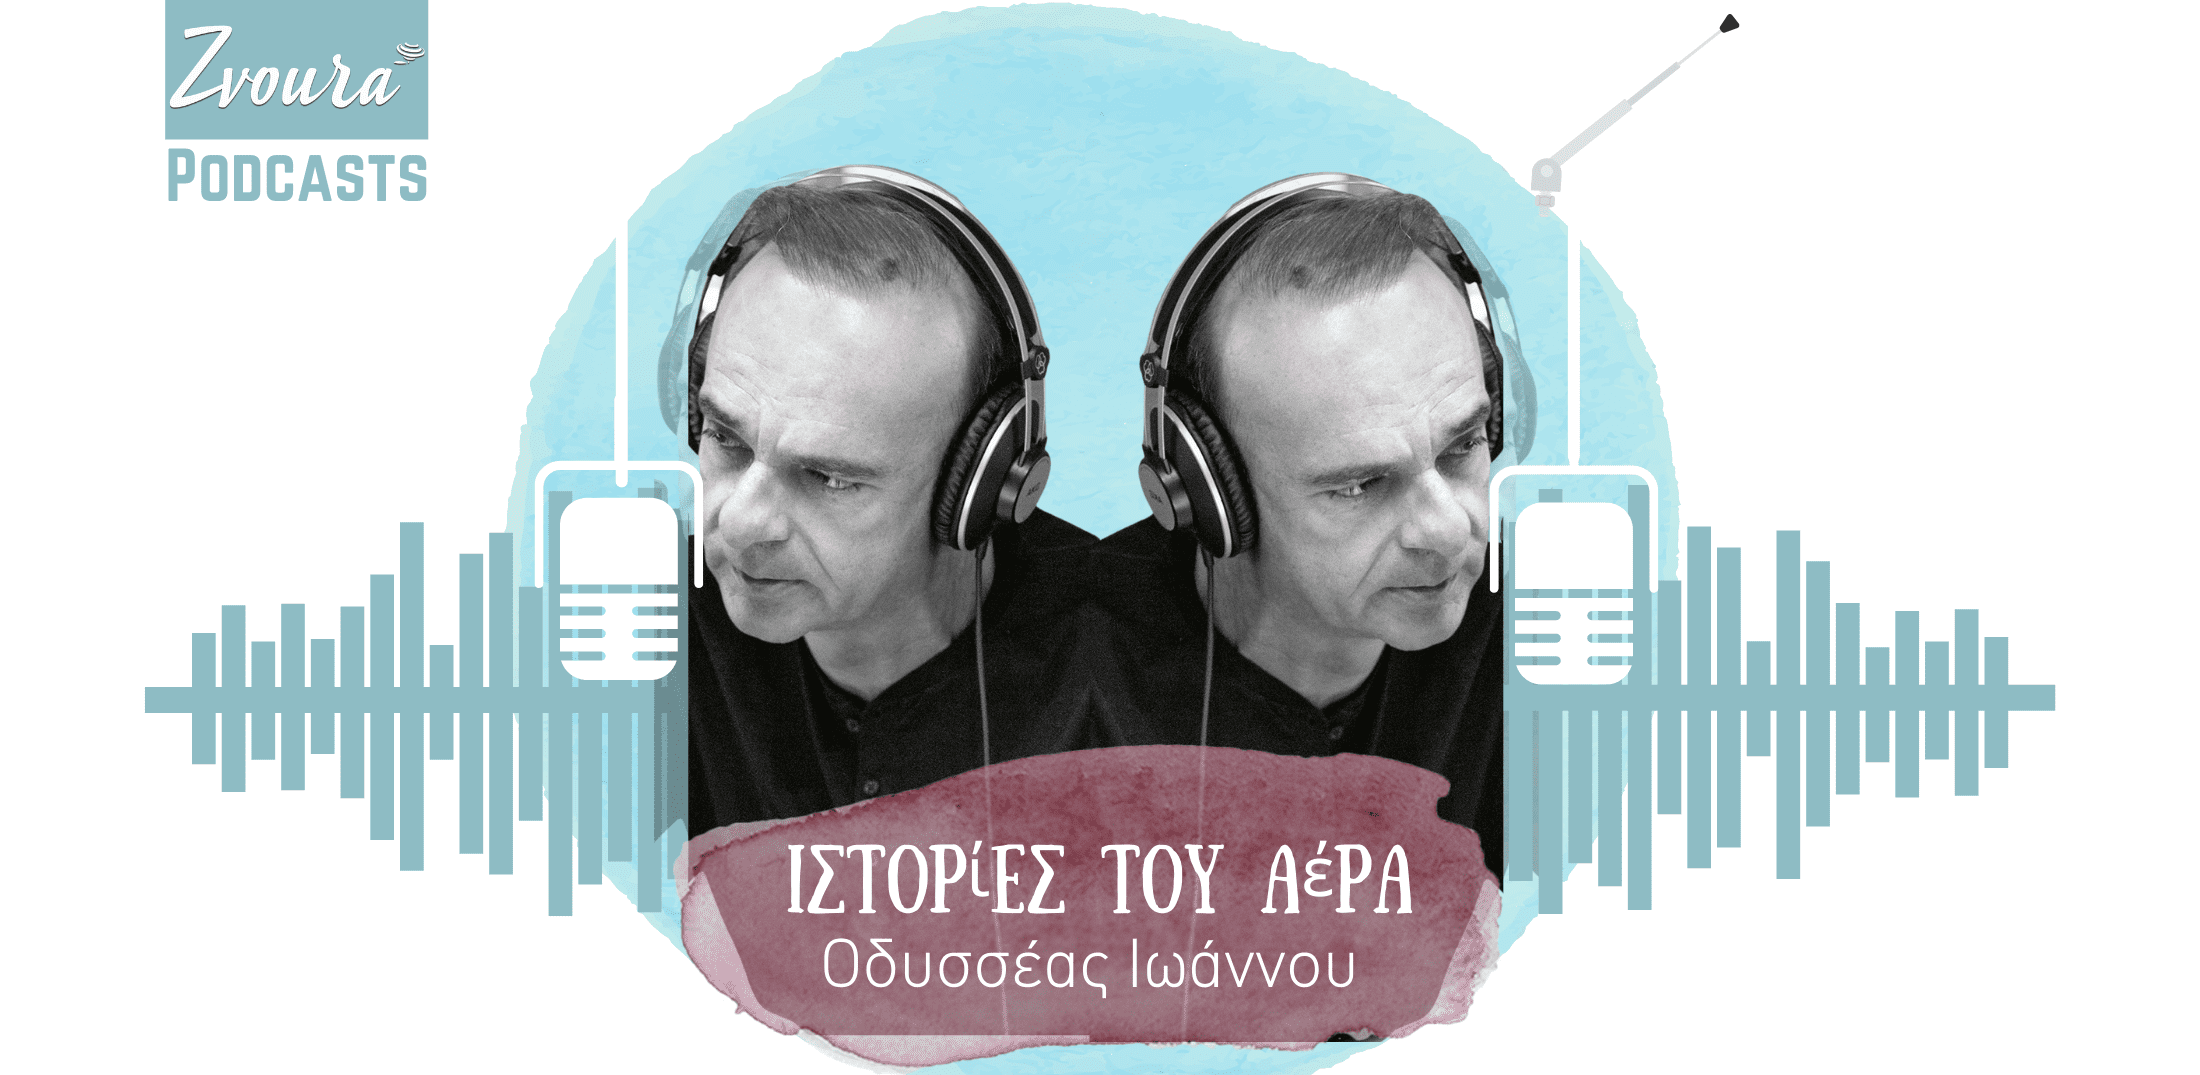 Ιστορίες του αέρα από τον Οδυσσέα Ιωάννου_zvoura.gr